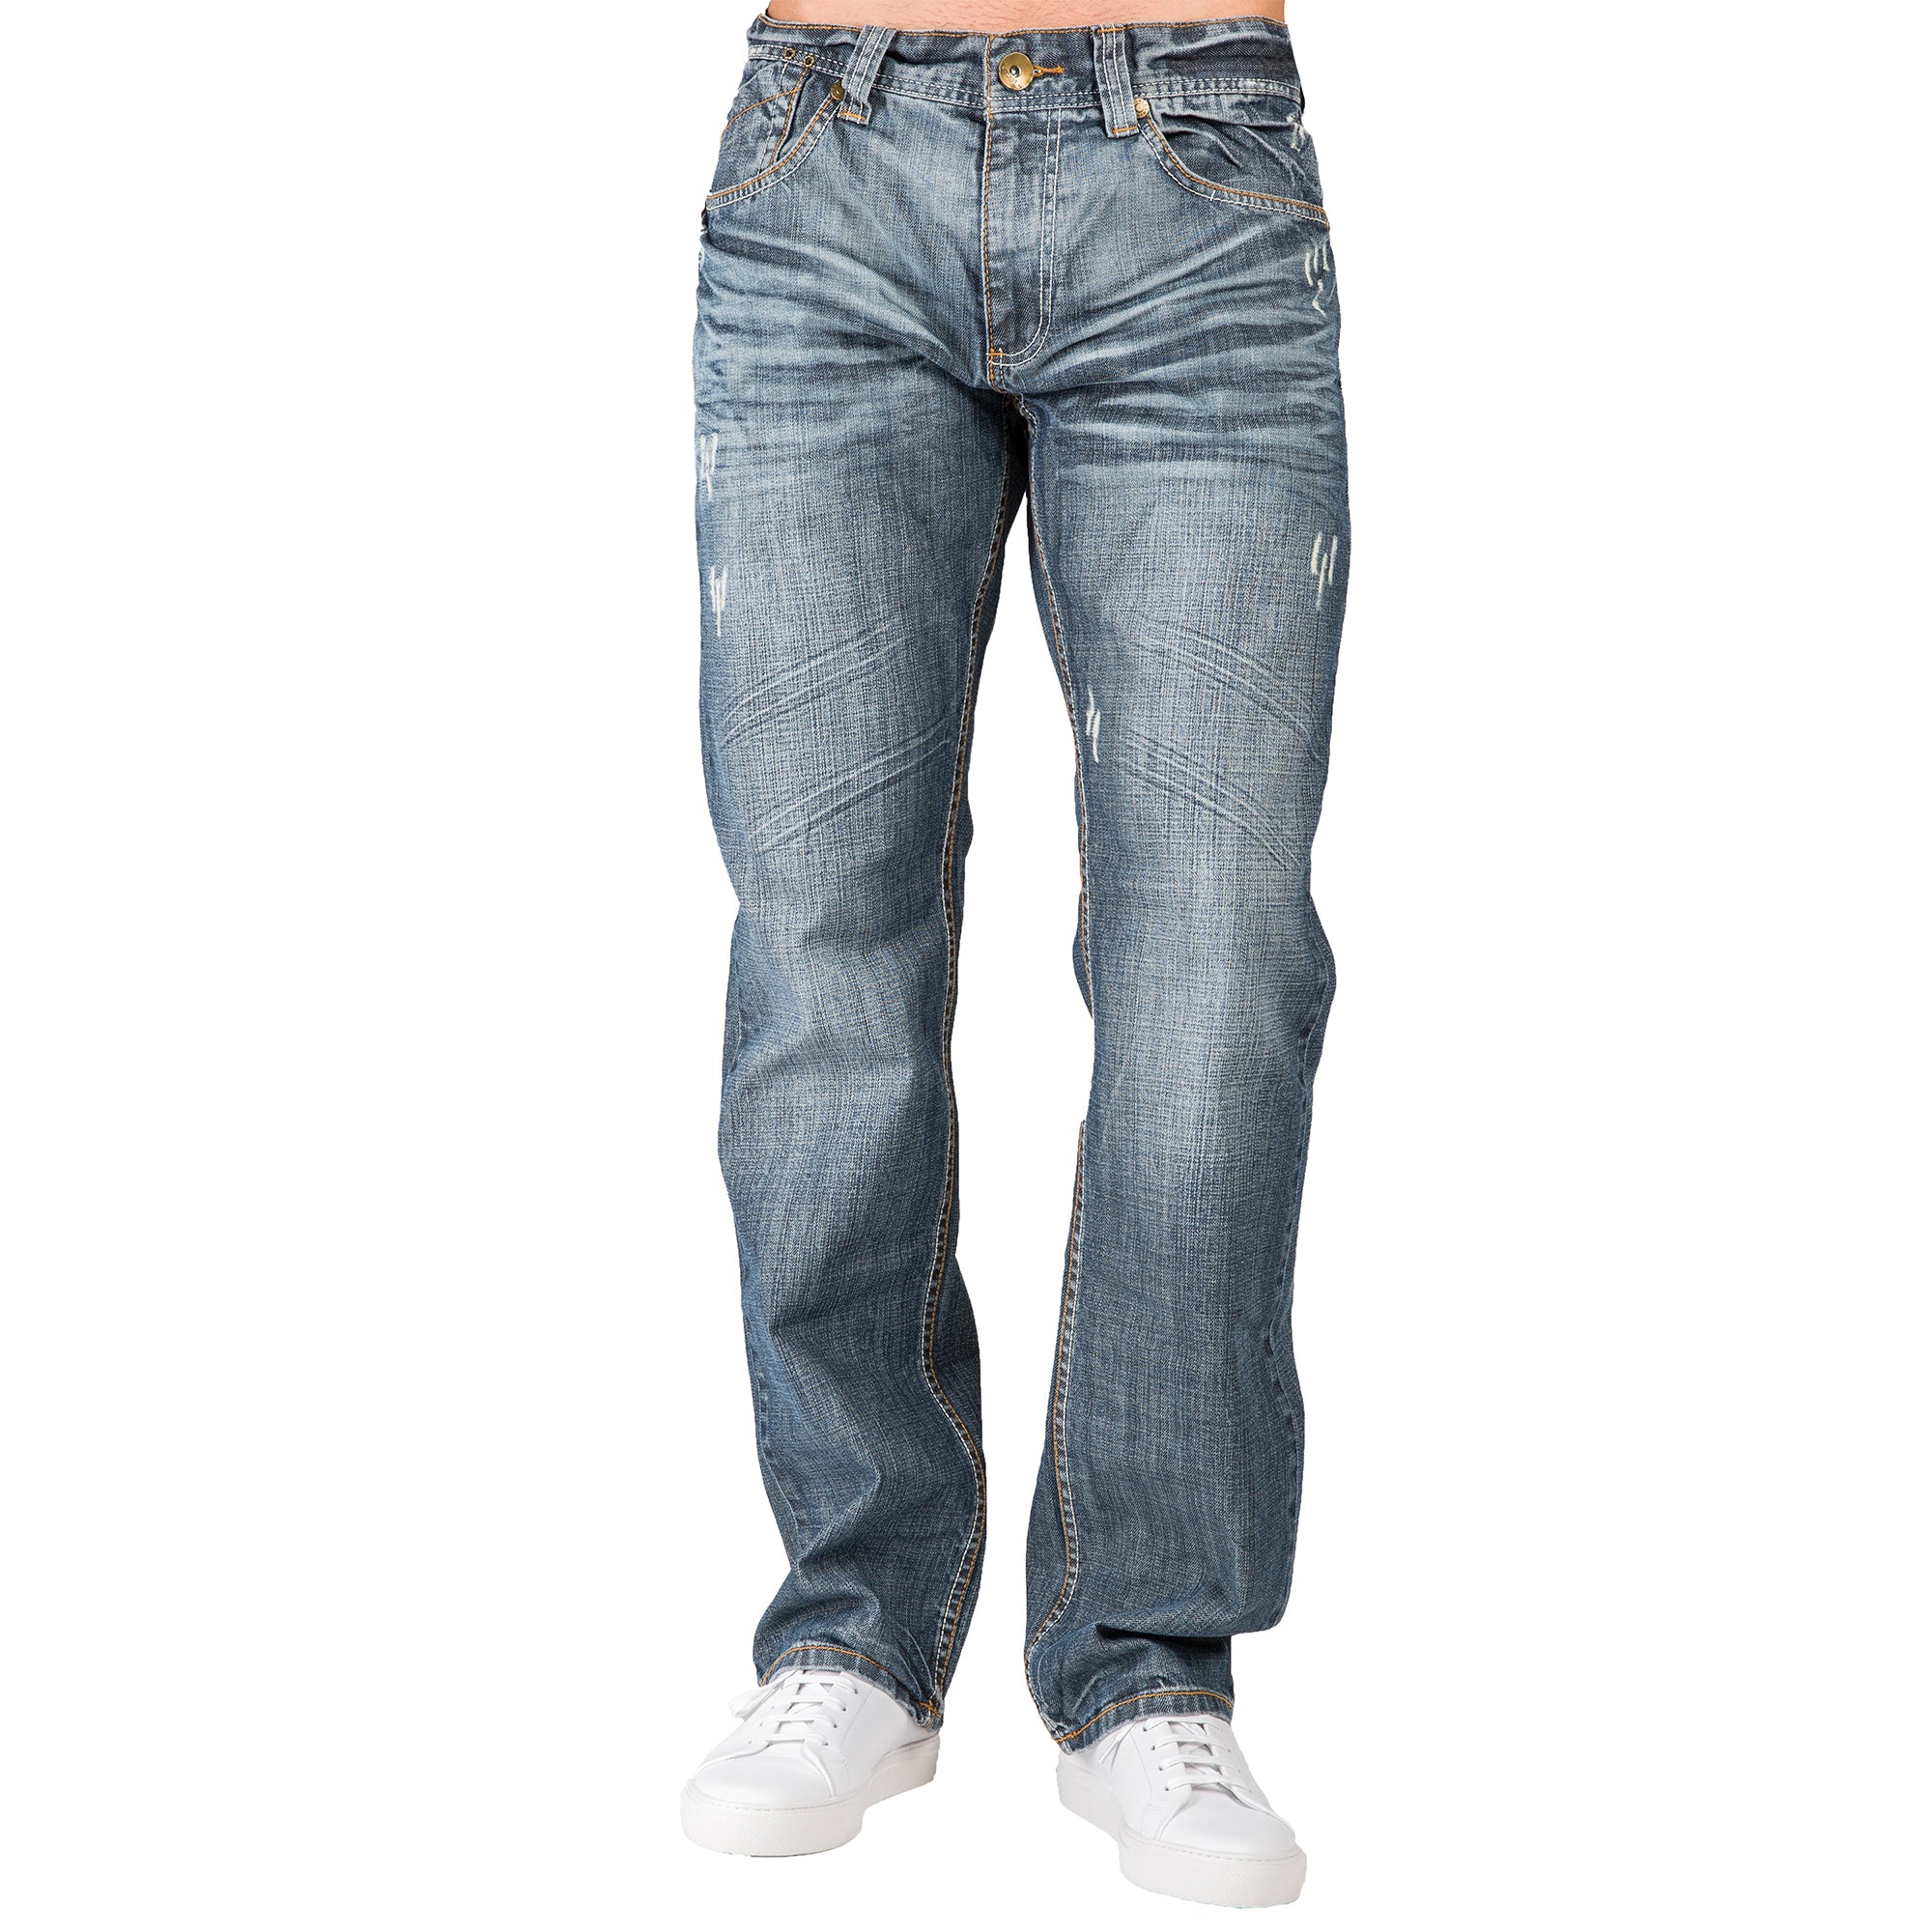 Level 7 Men's Relaxed Straight Distressed Medium Blue Jean Premium Denim – Level 7